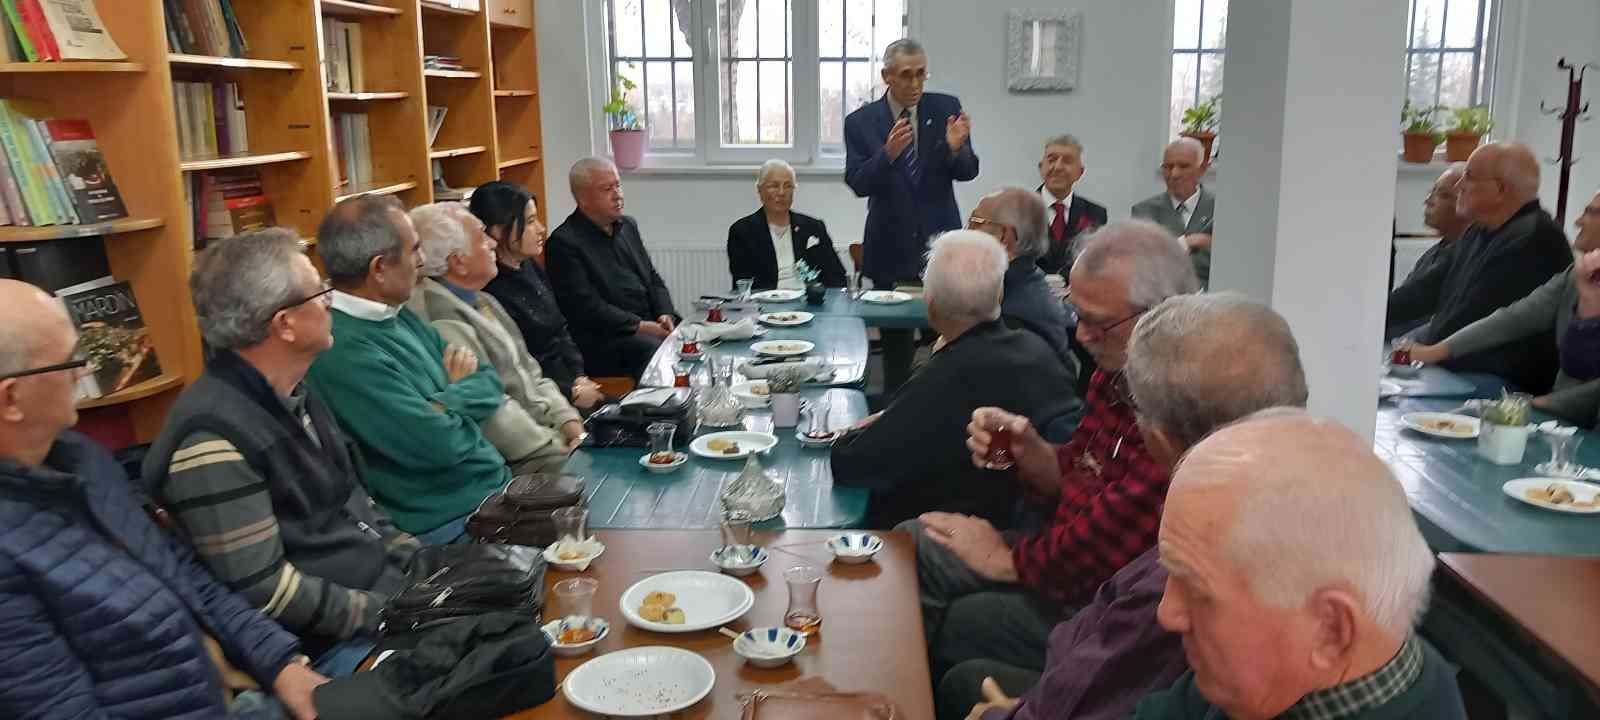 Eskişehir’de emekli öğretmenler 48 yıl sonra buluştu